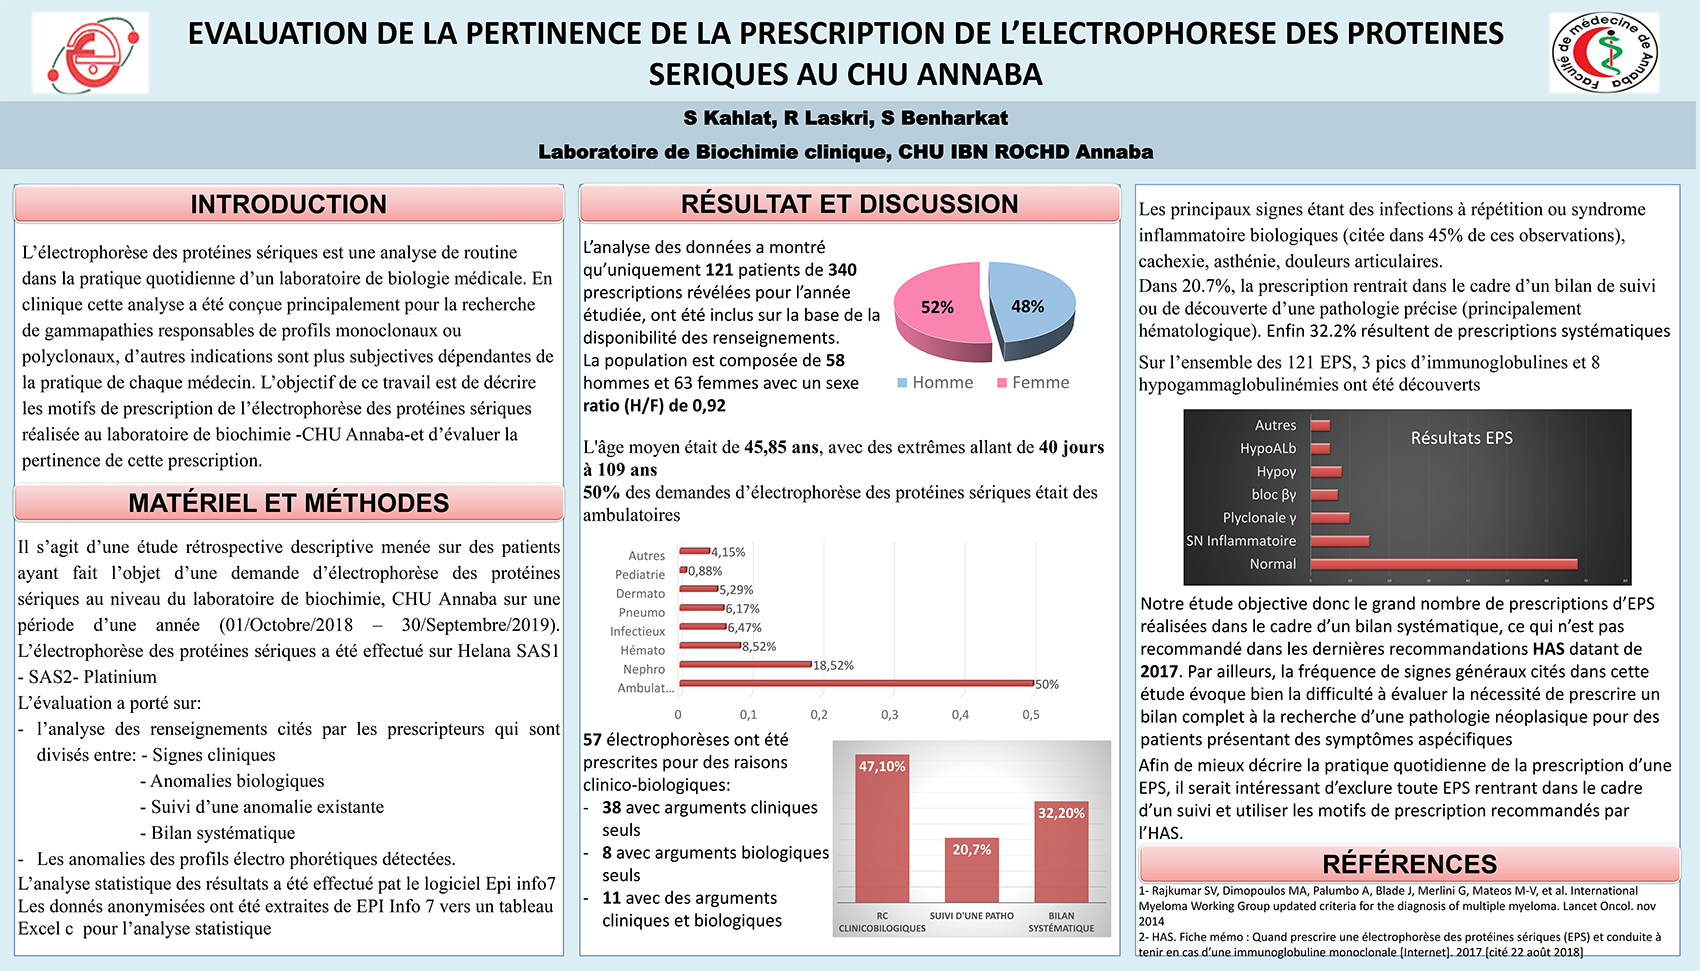 P72 : EVALUATION DE LA PERTINENCE DE LA PRESCRIPTION DE L’ELECTROPHORESE DES PROTEINES SERIQUES AU CHU ANNABA